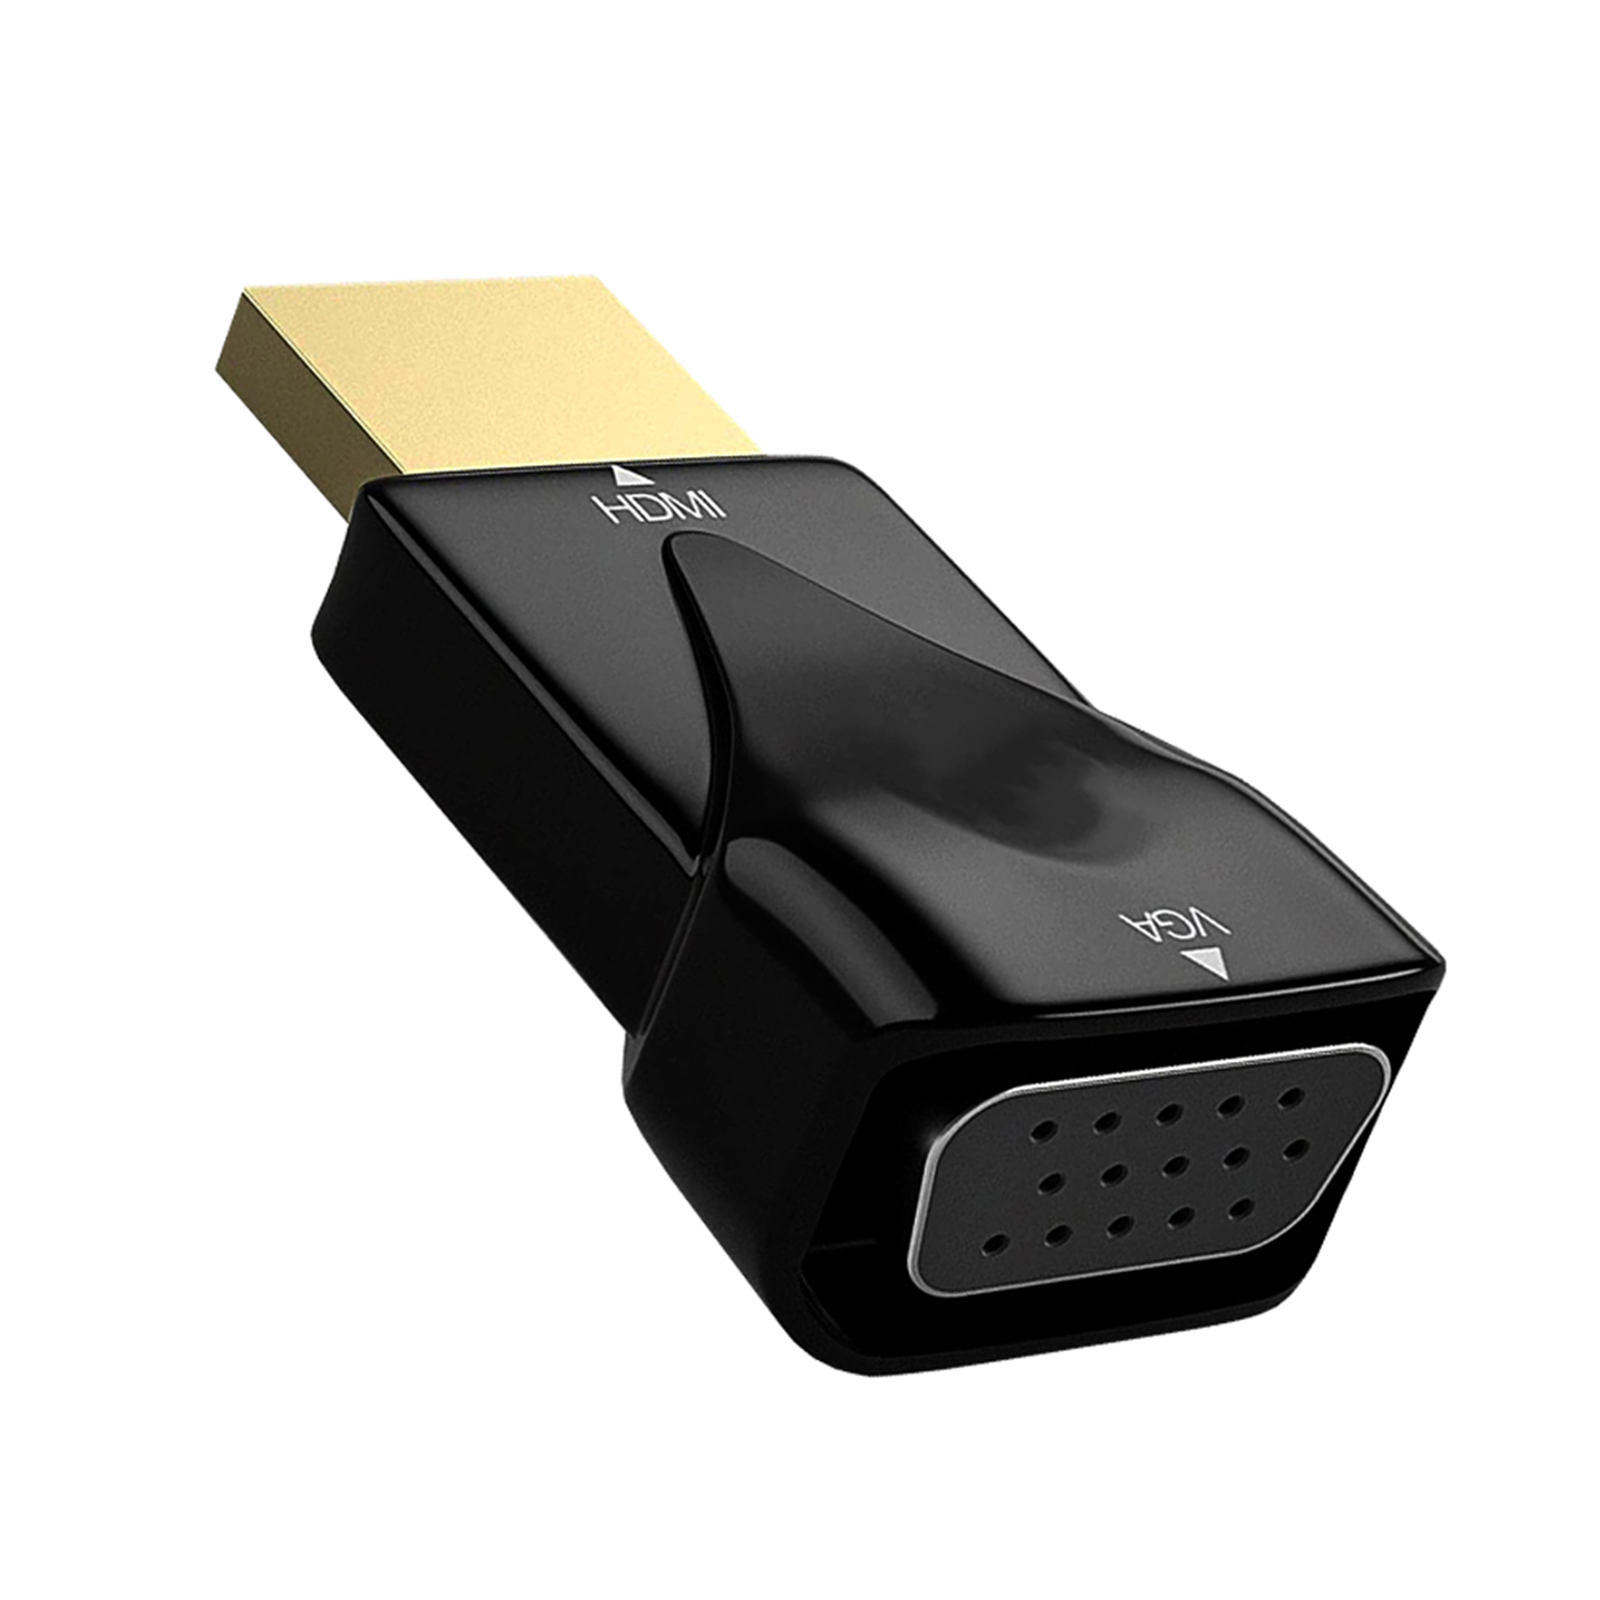 Hdmi 互換から VGA アダプター HDMI 互換 VGA コンバーター ケーブル モニター コンピューター PC デスクトップ ラップトップ プロジェク